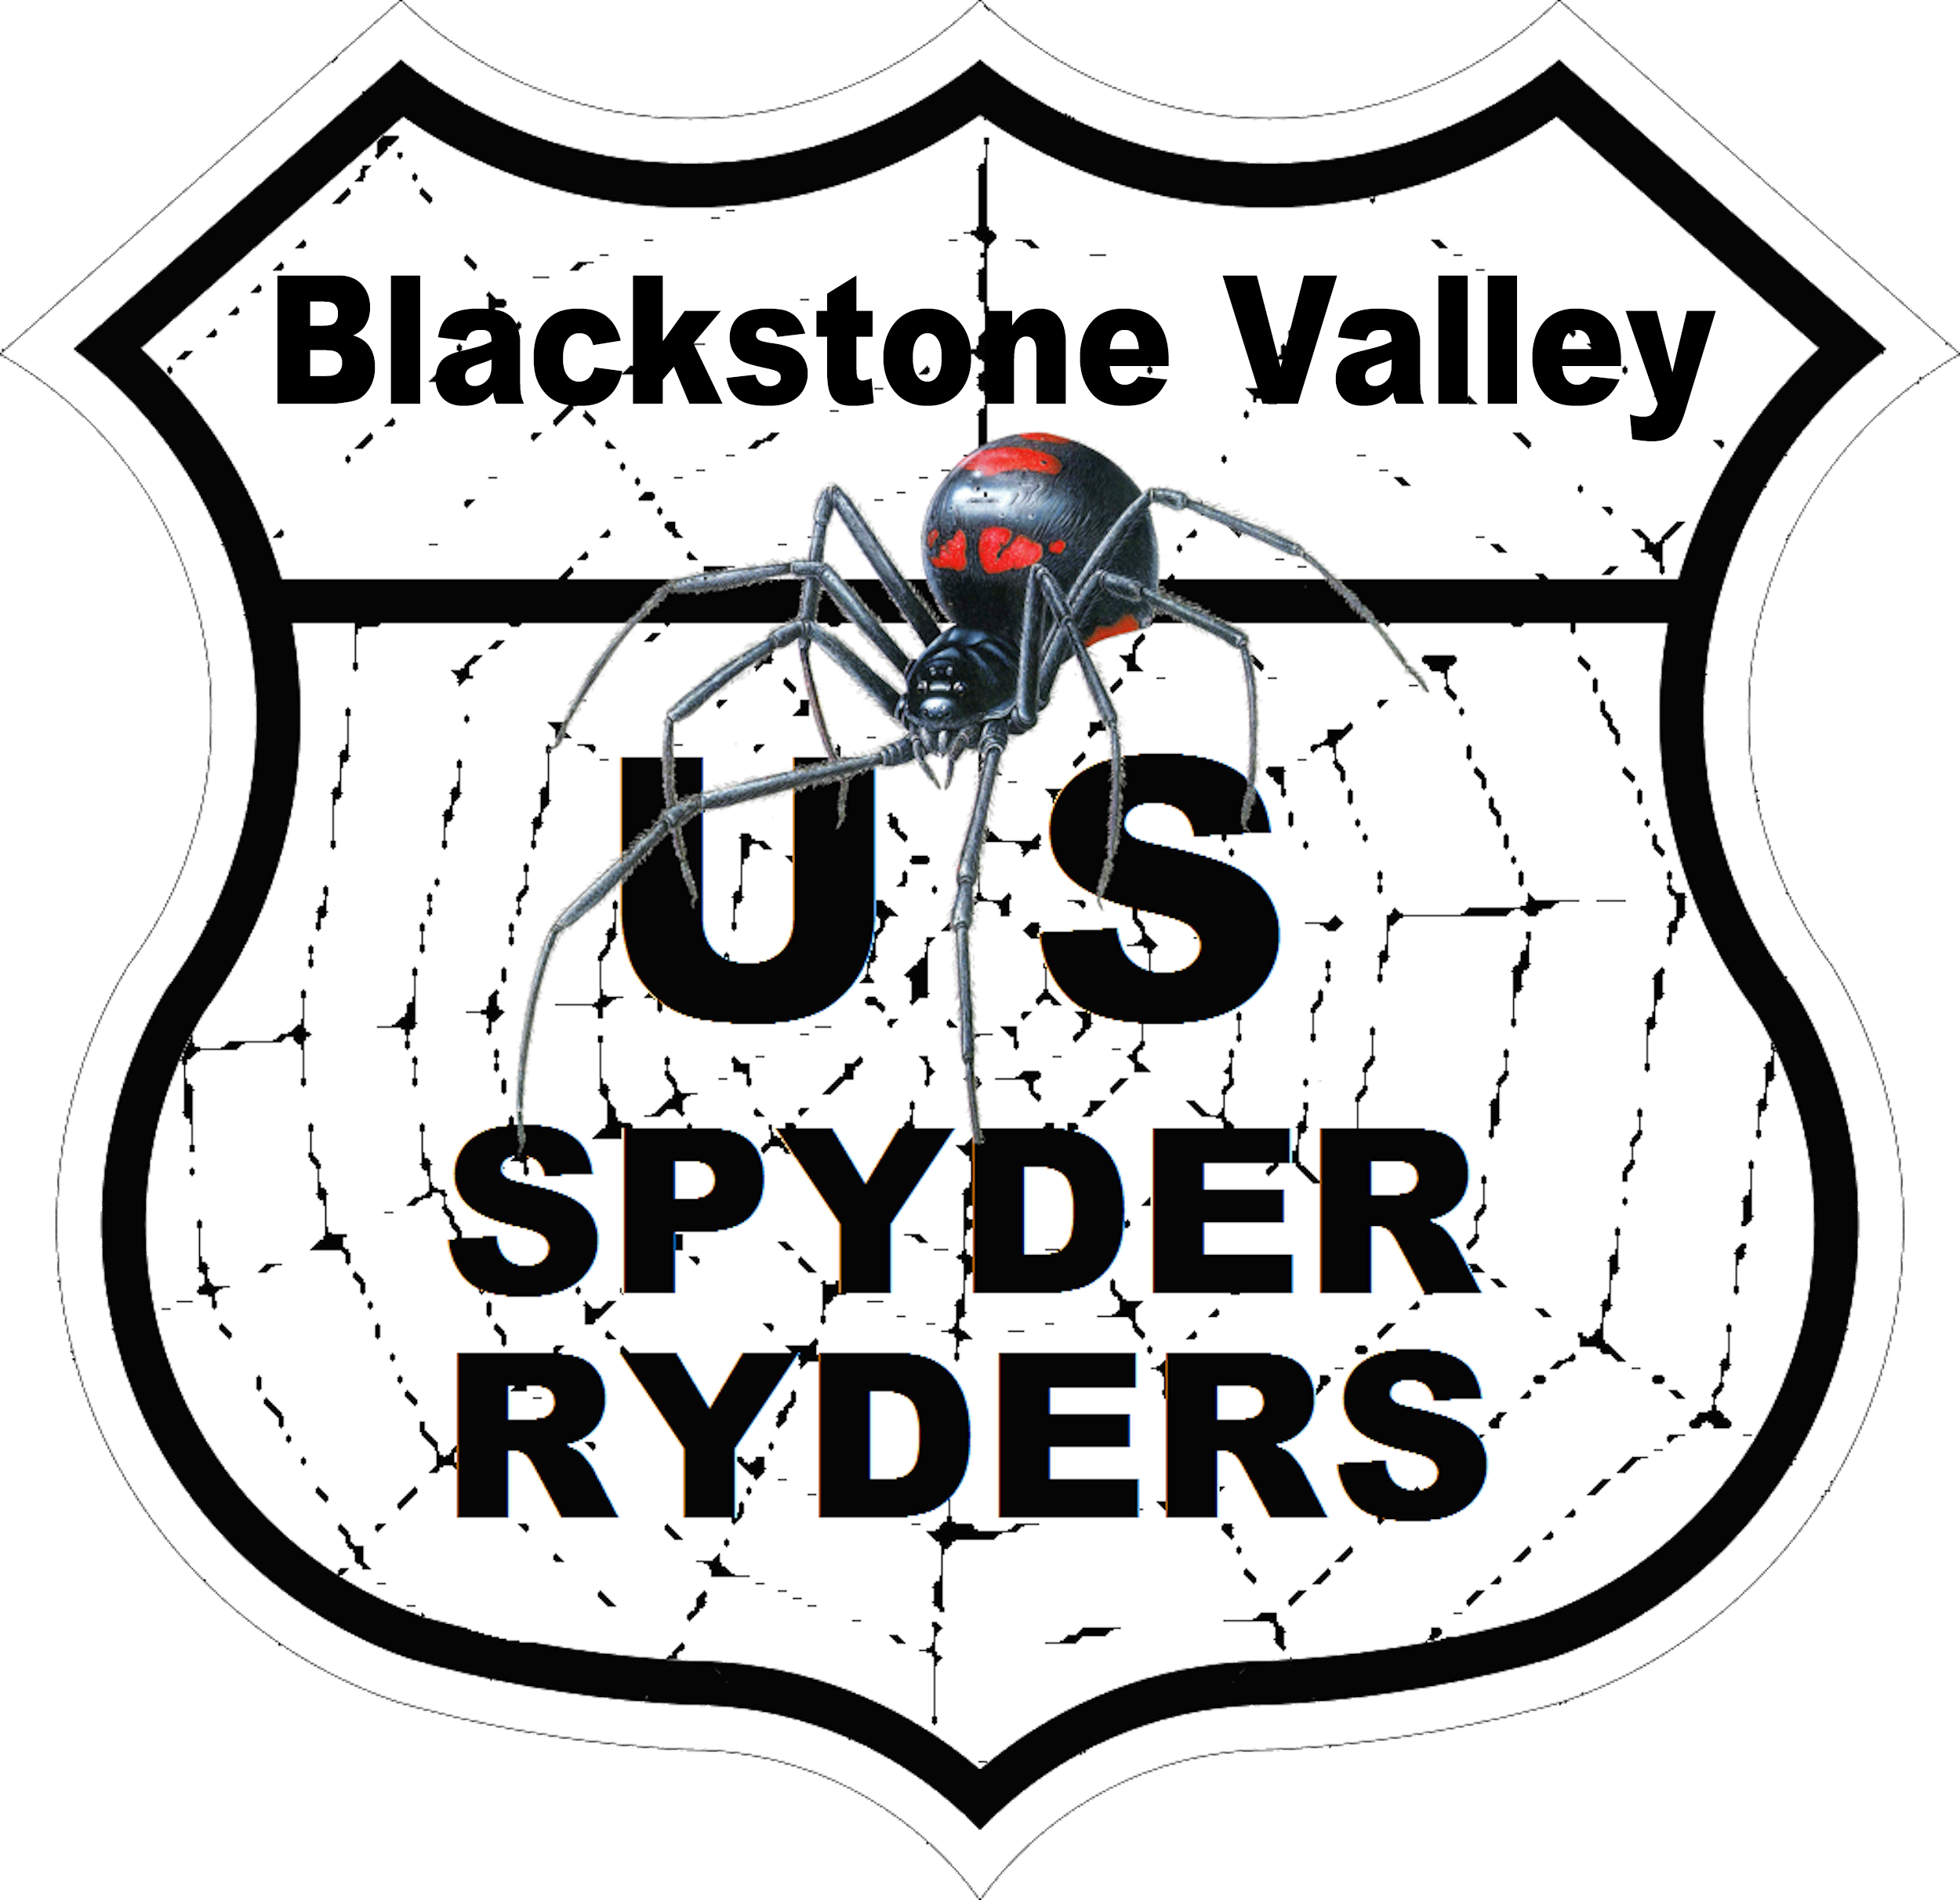 US_Spyder_Ryder_MA-BlackstoneValley.png